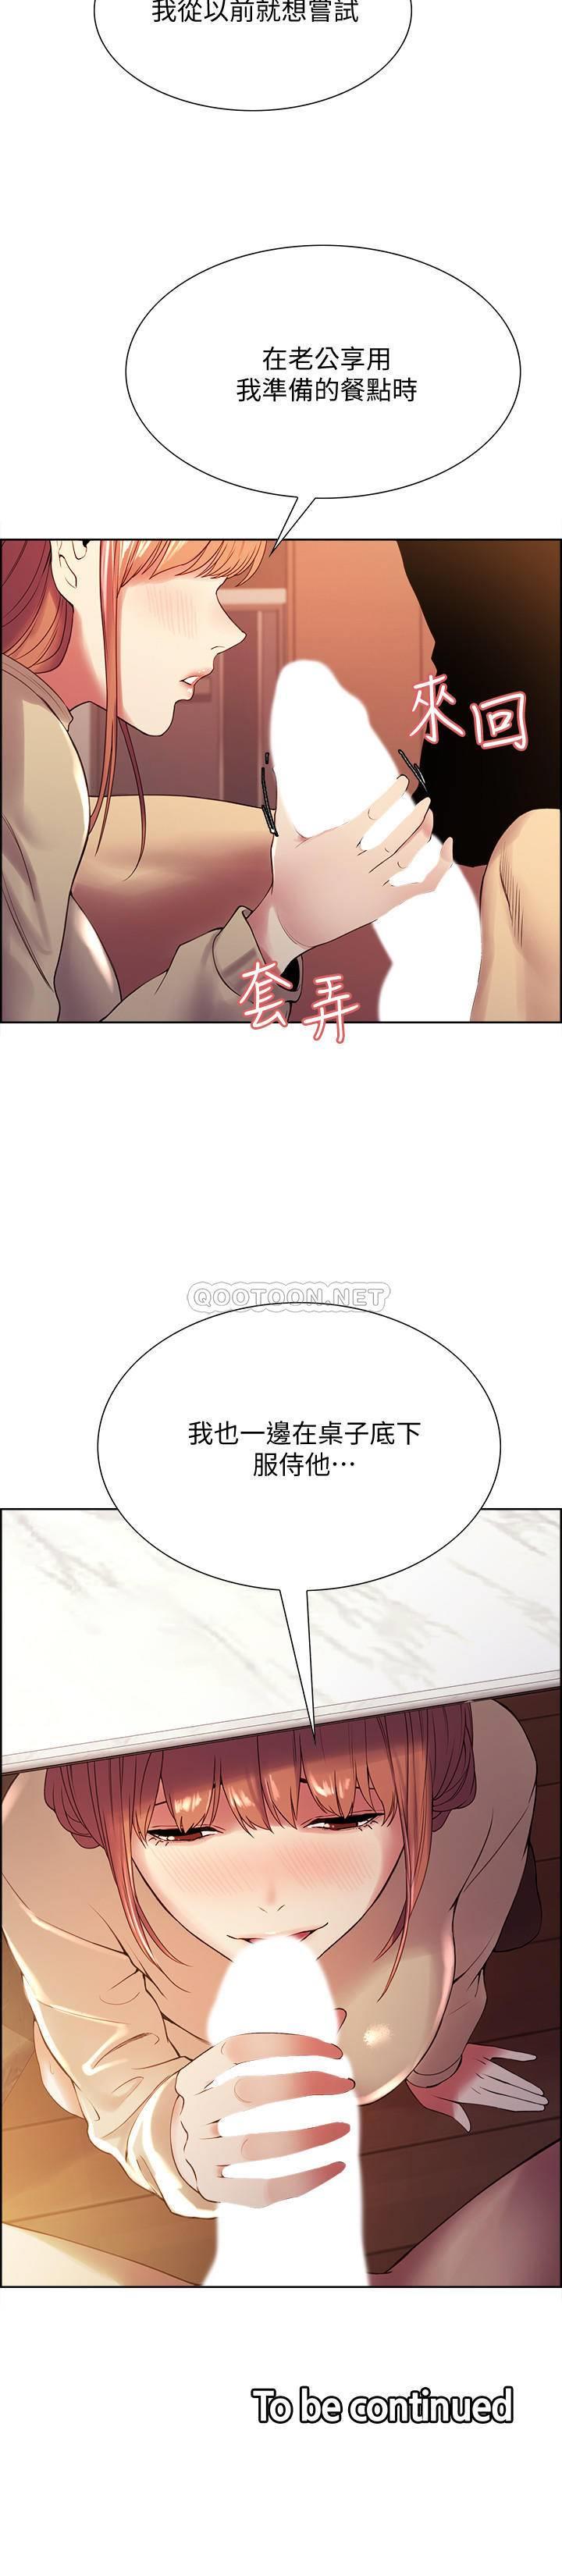 《室友招募中》漫画 第37话 - 我也不输年轻妹子…!